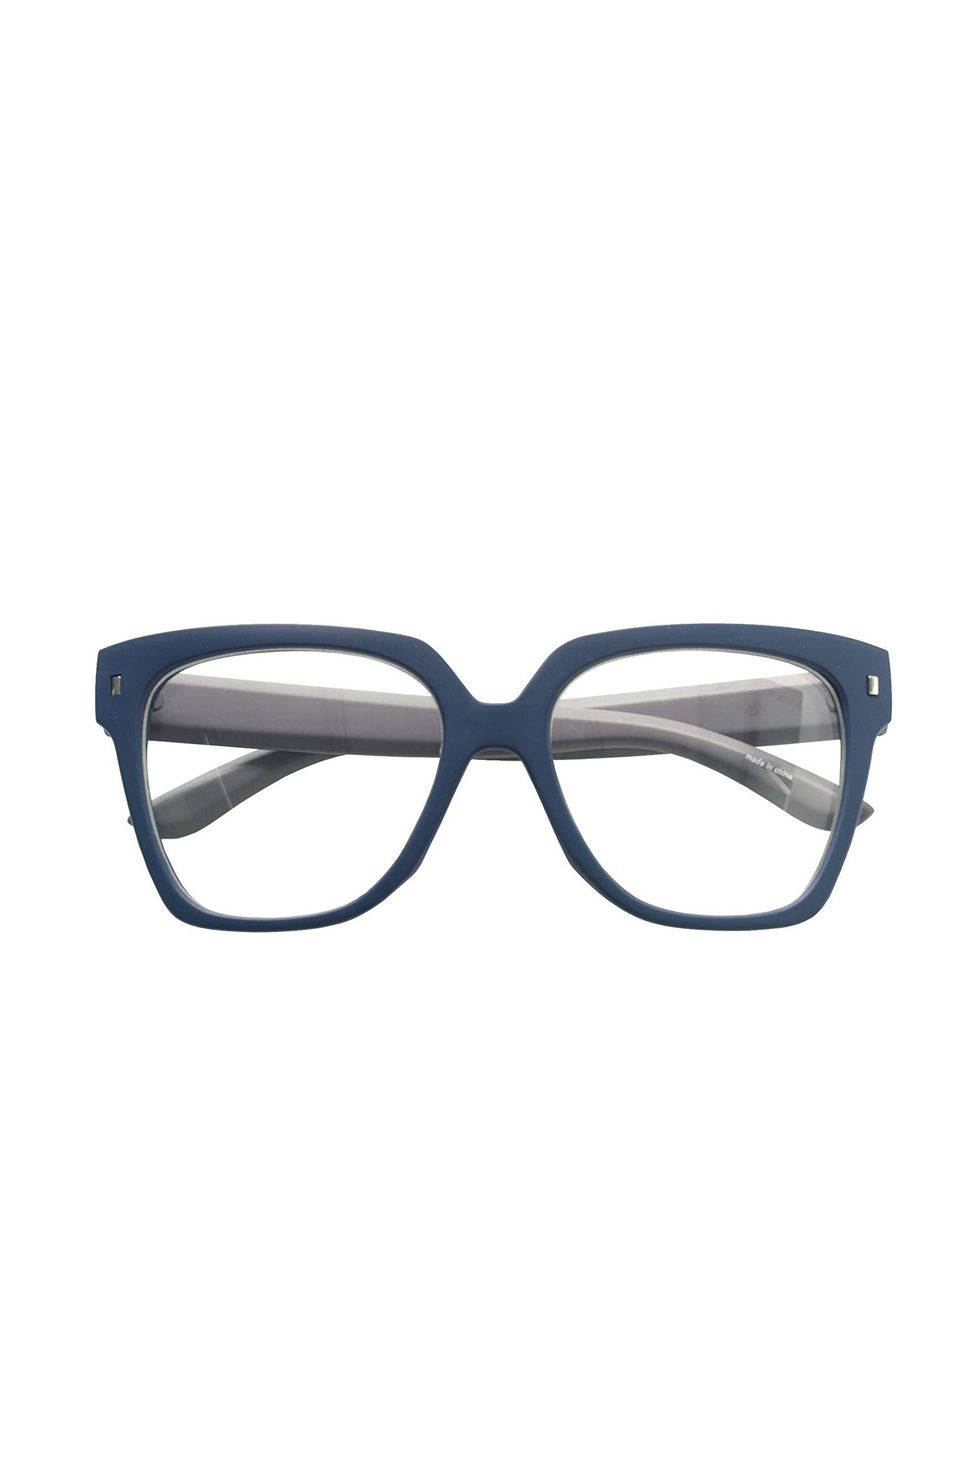 Retro Nerd Geek Oversized Eye Glasses Horn Rim Framed Clear Lens Spectacles (MATT BLUE 90214)